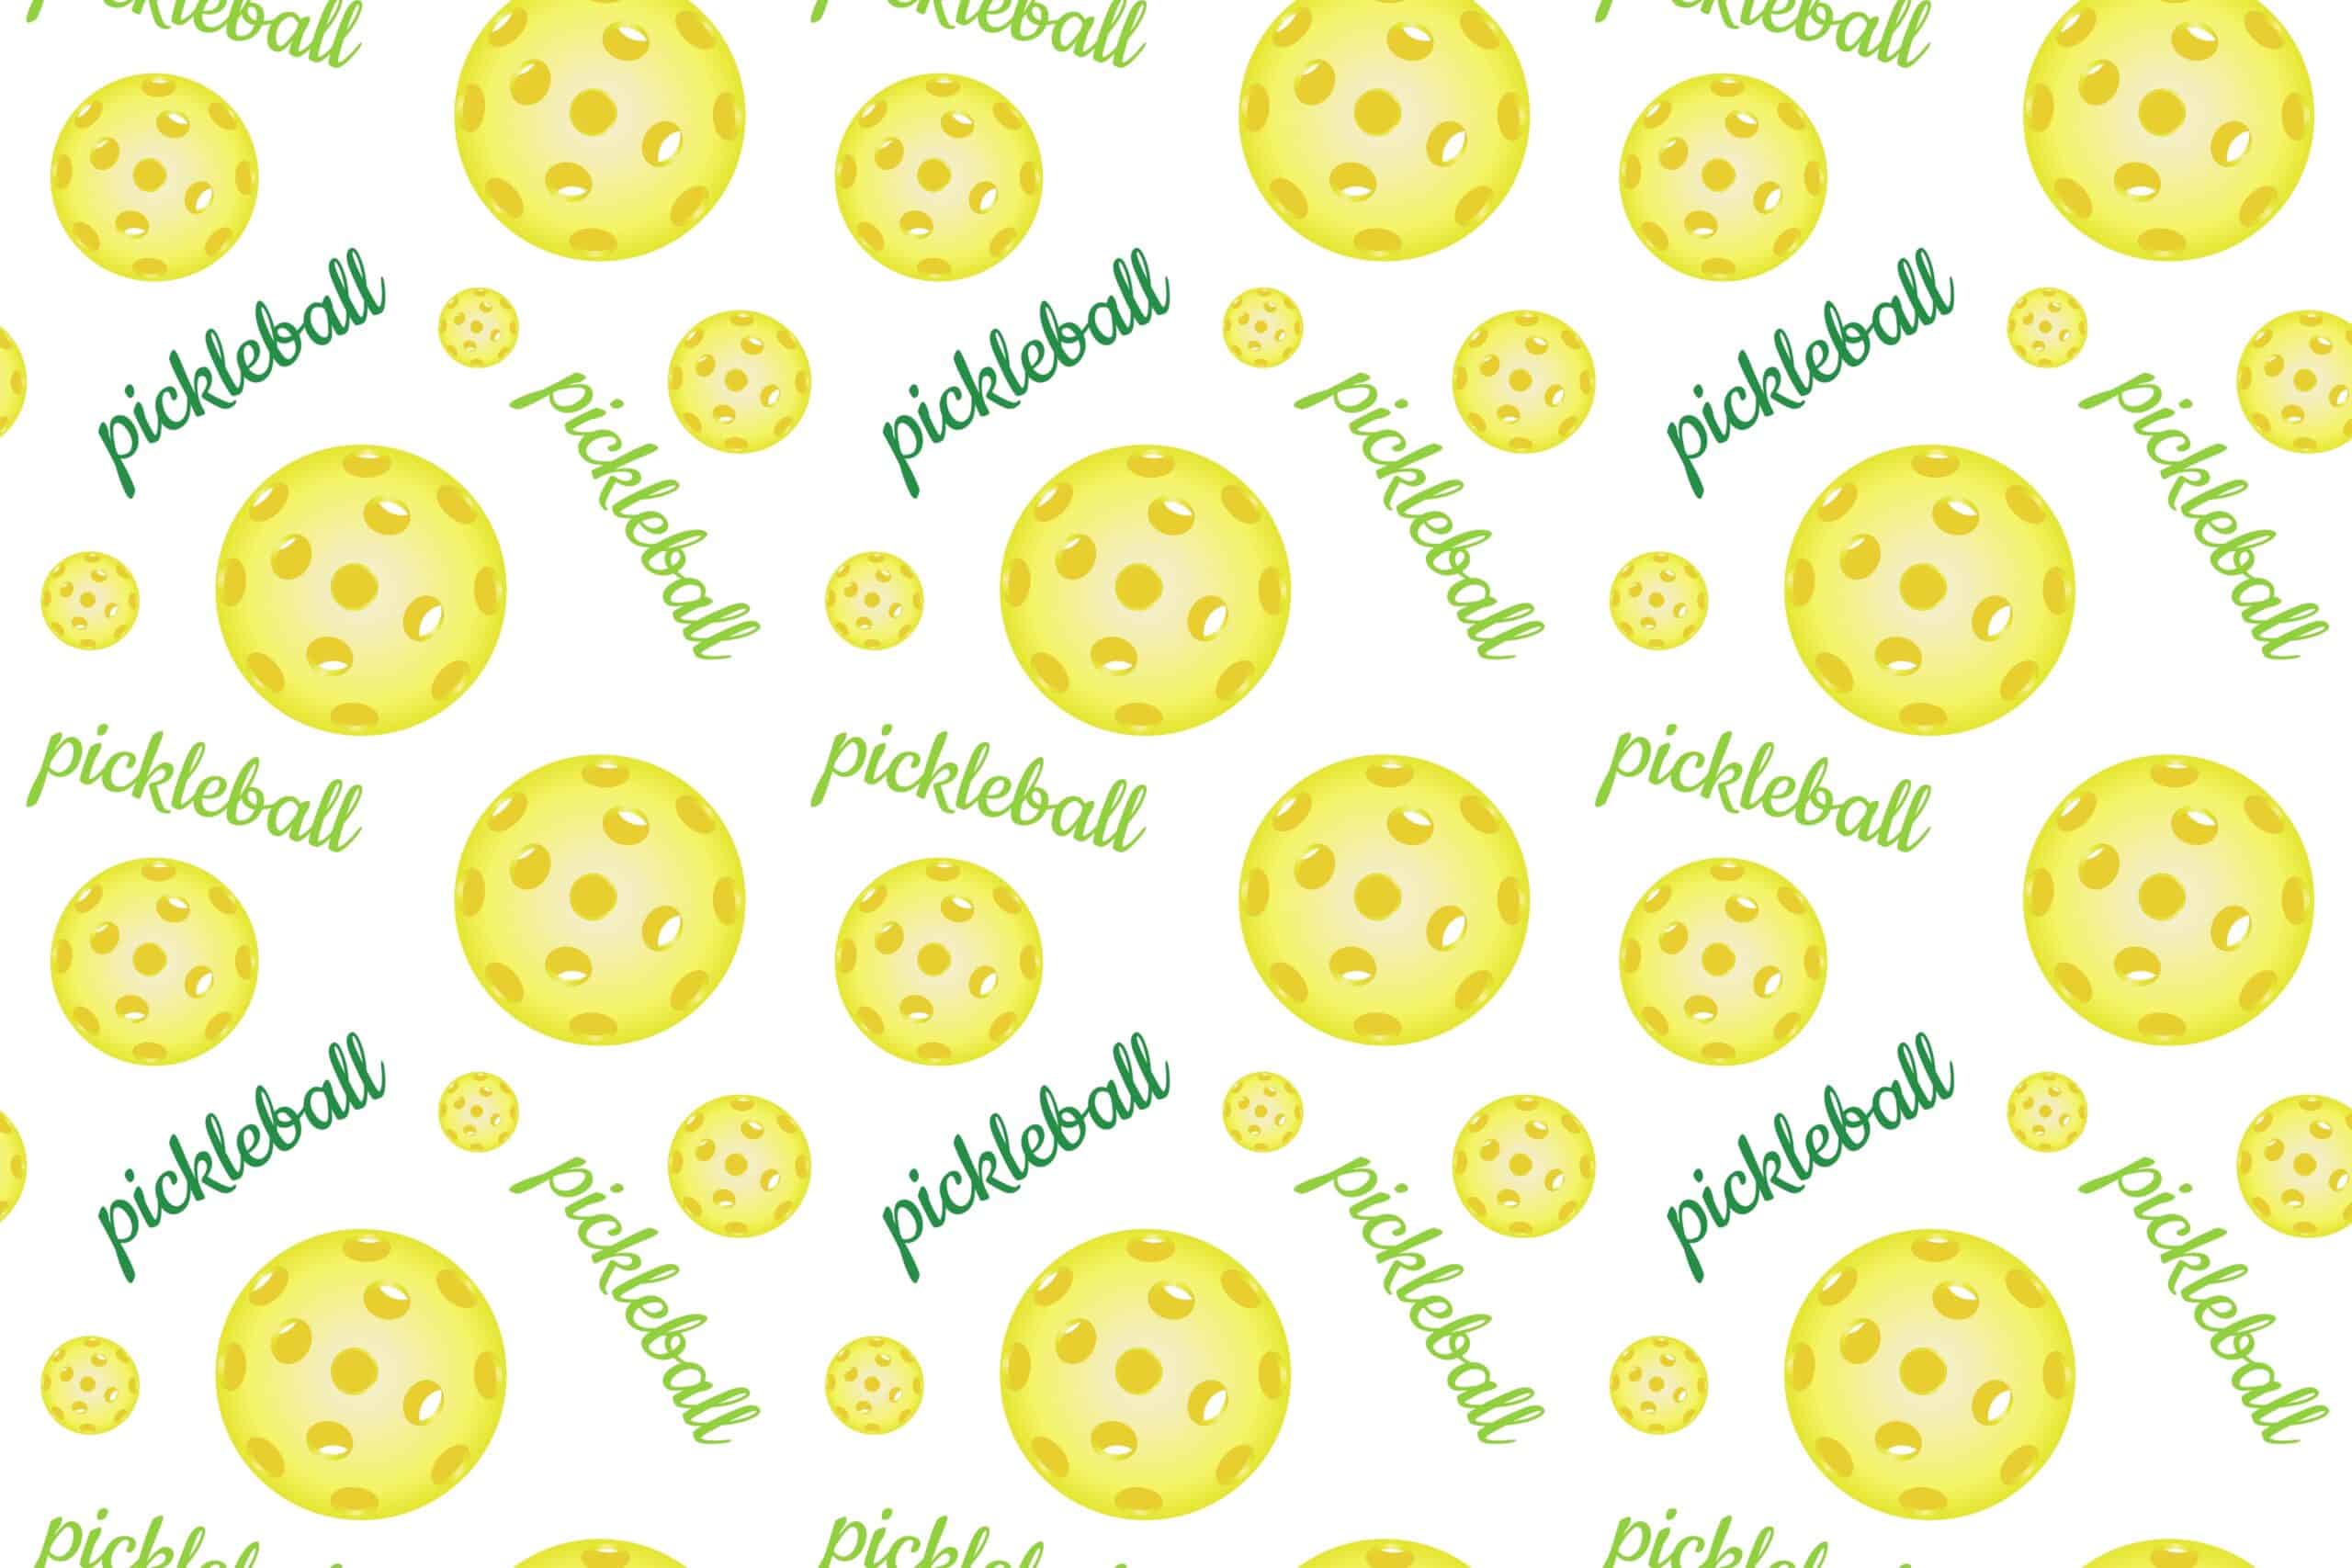 best pickleball balls